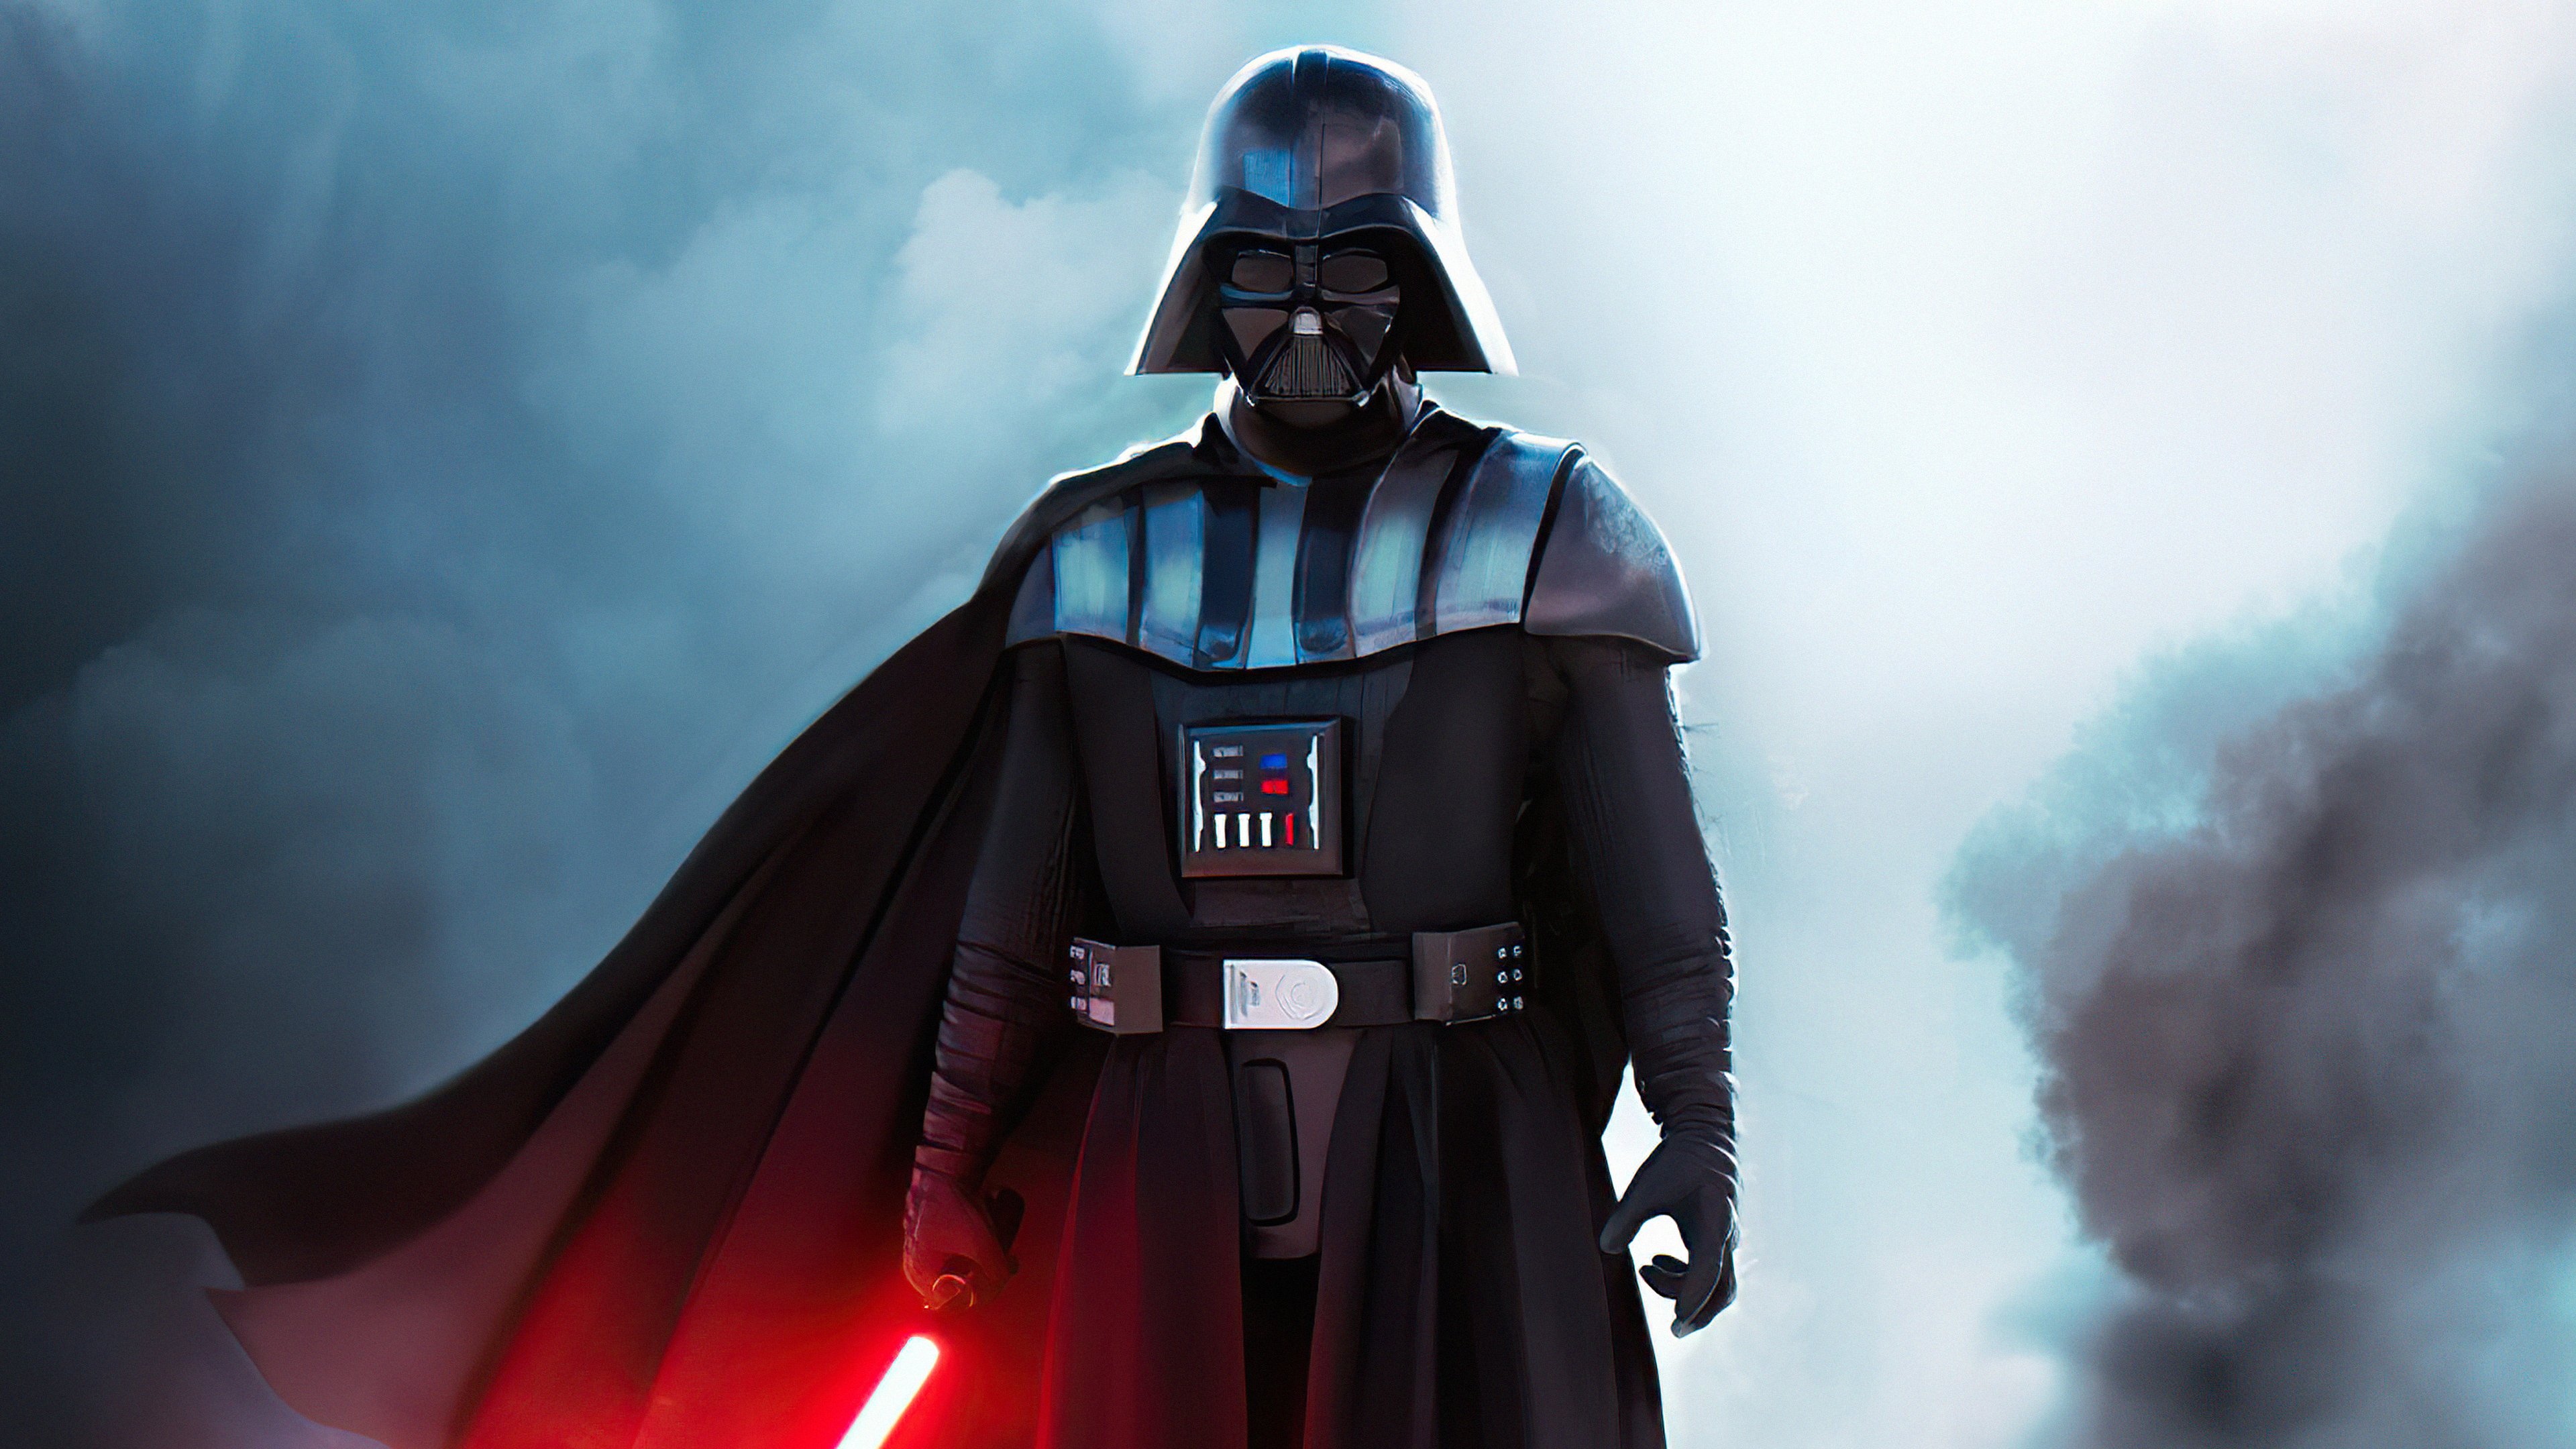 Fondos de pantalla Darth Vader con sable de luz rojo